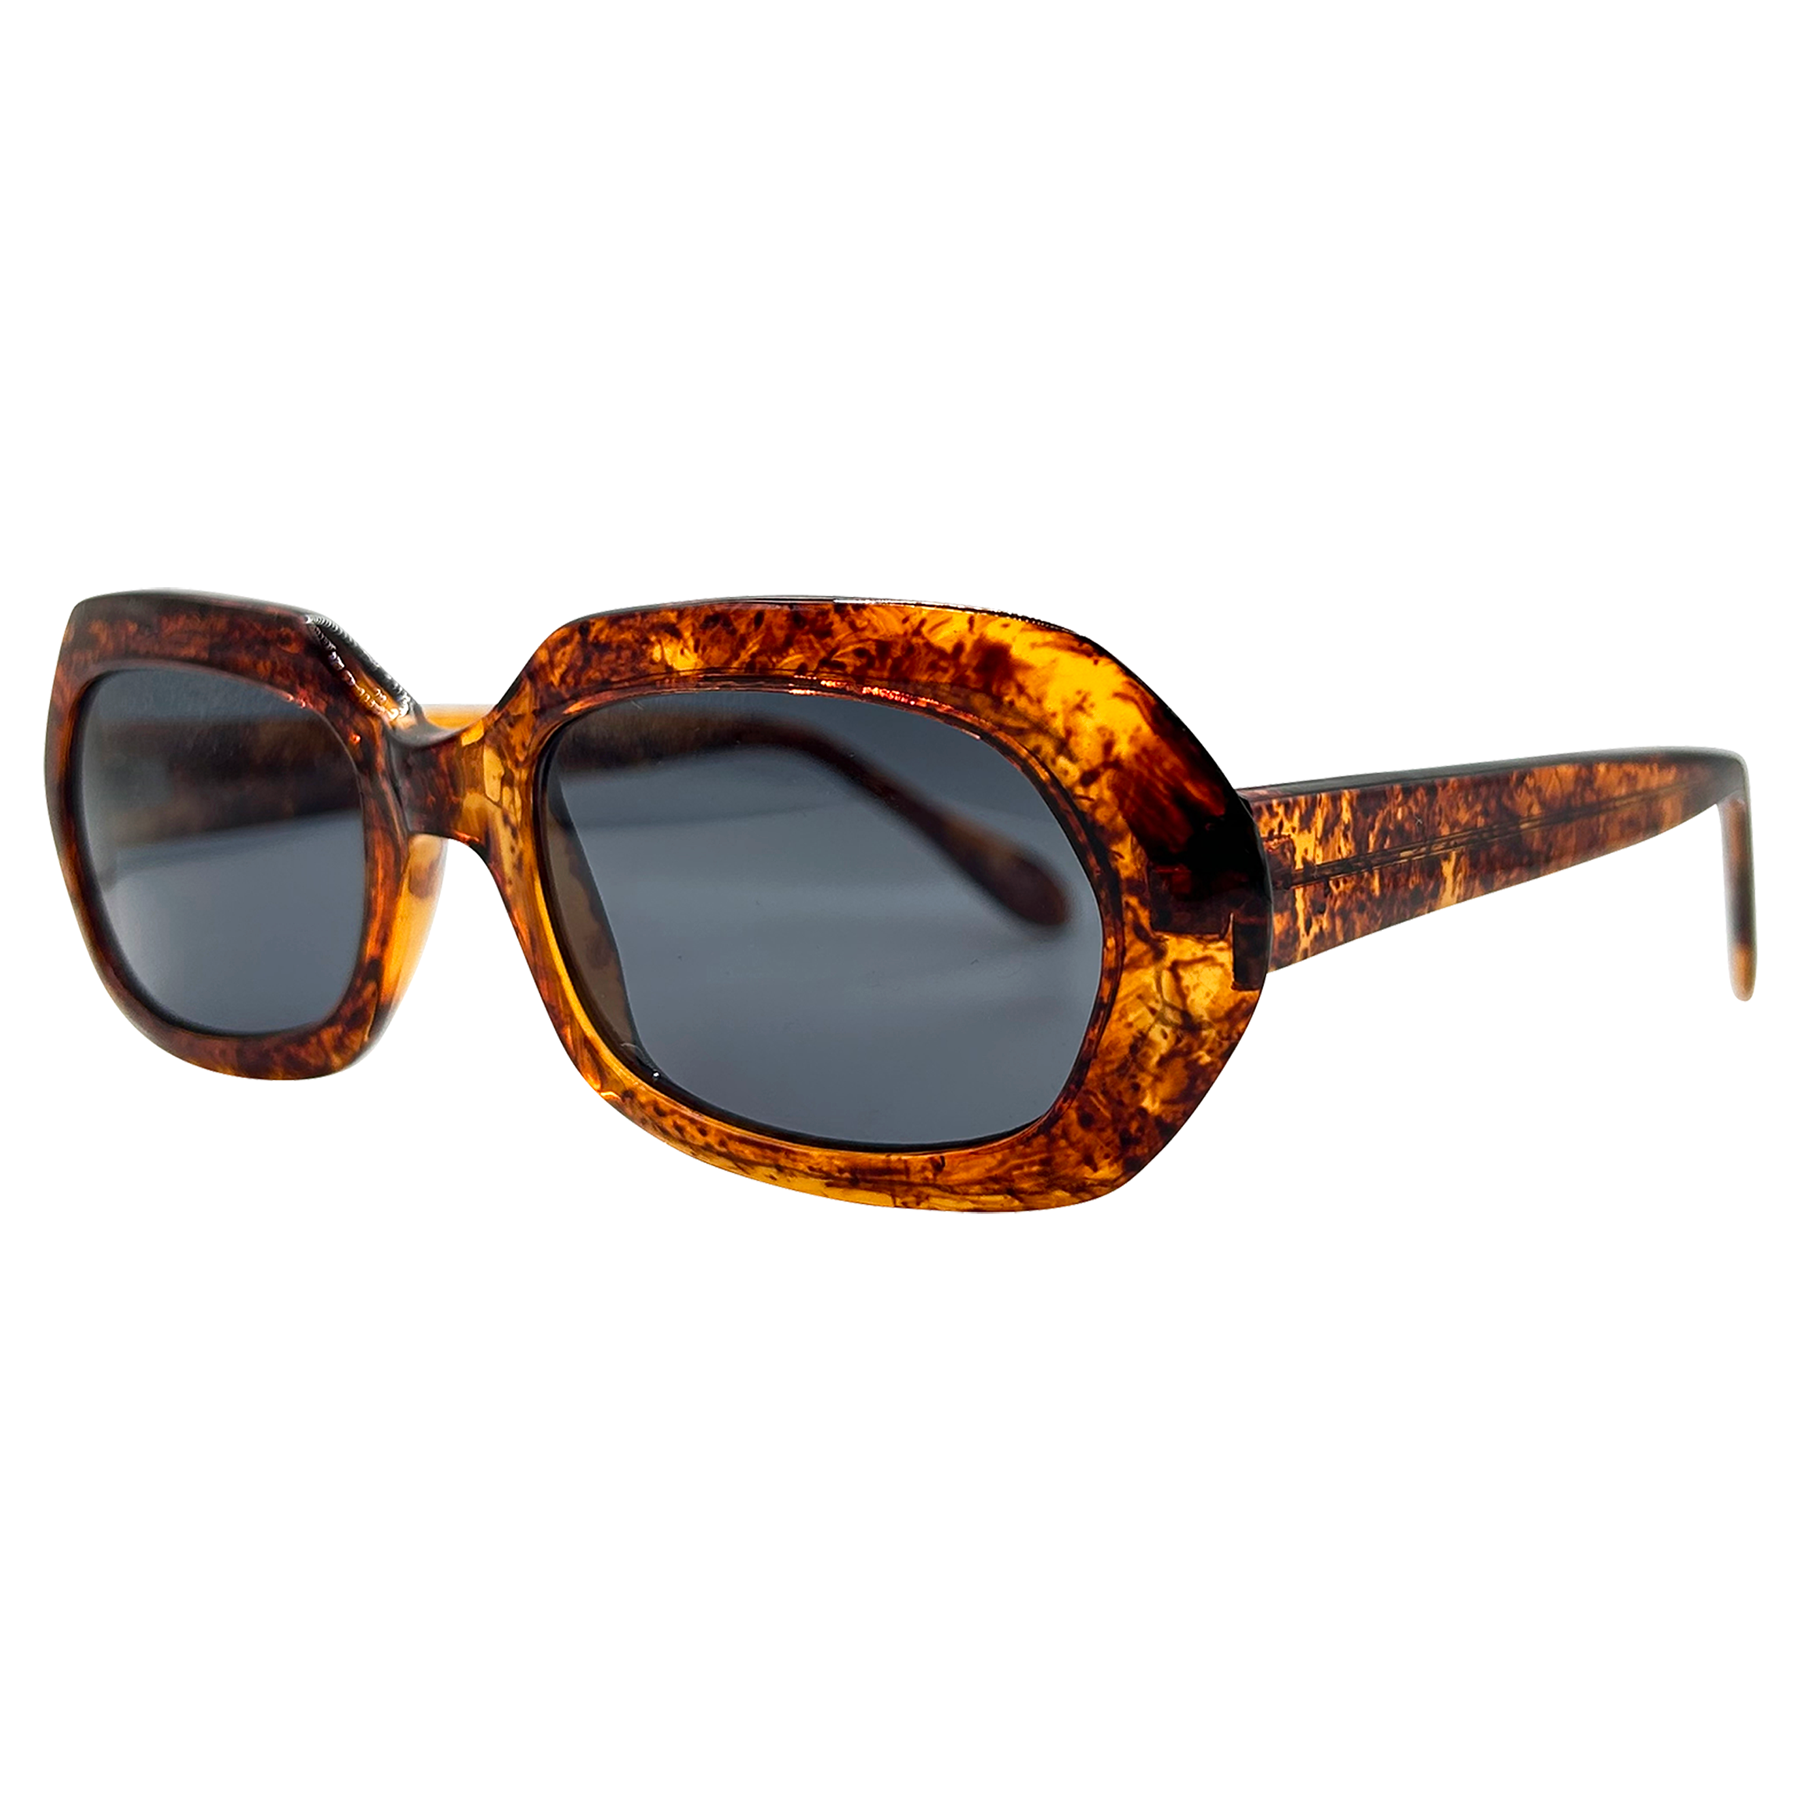 TUESDAY Calico/Super Dark Mod Sunglasses